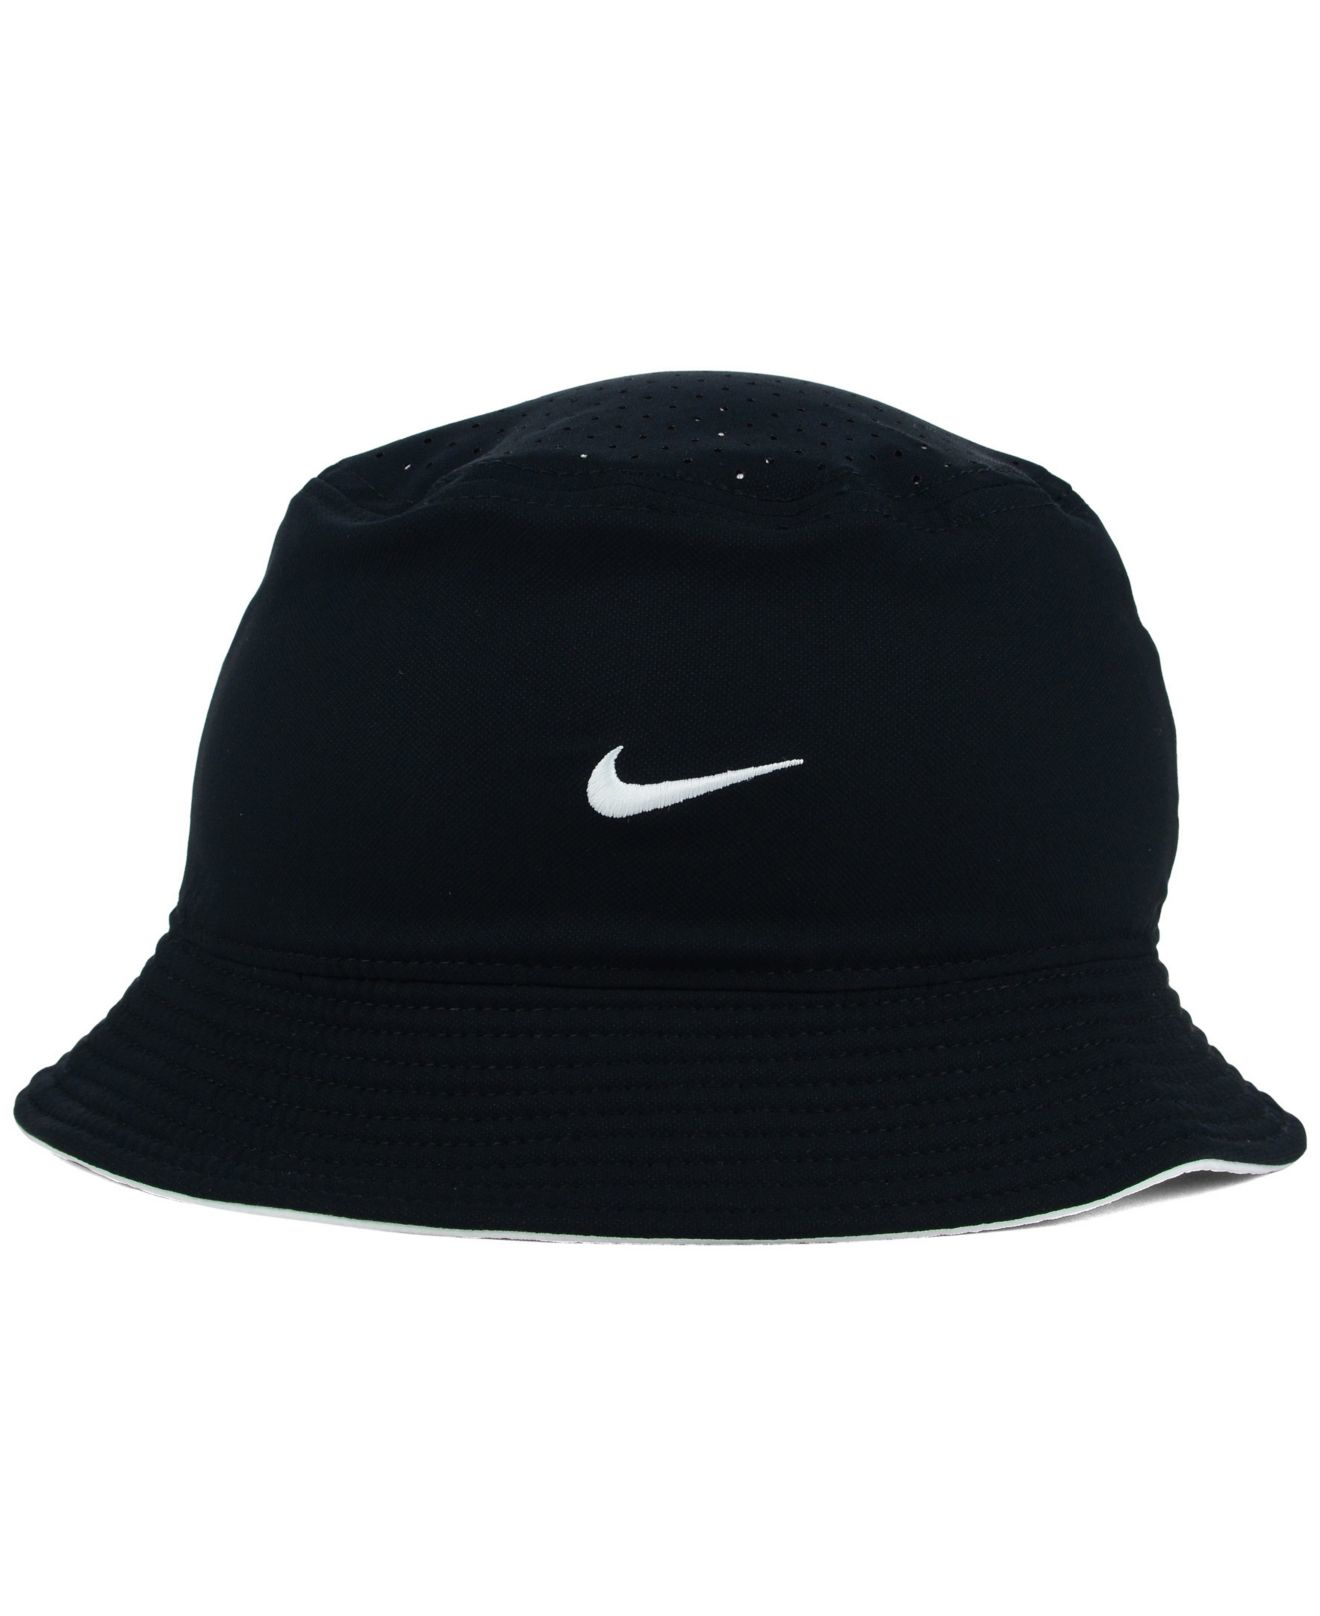 Lyst - Nike Chicago White Sox Vapor Bucket Hat in Black for Men